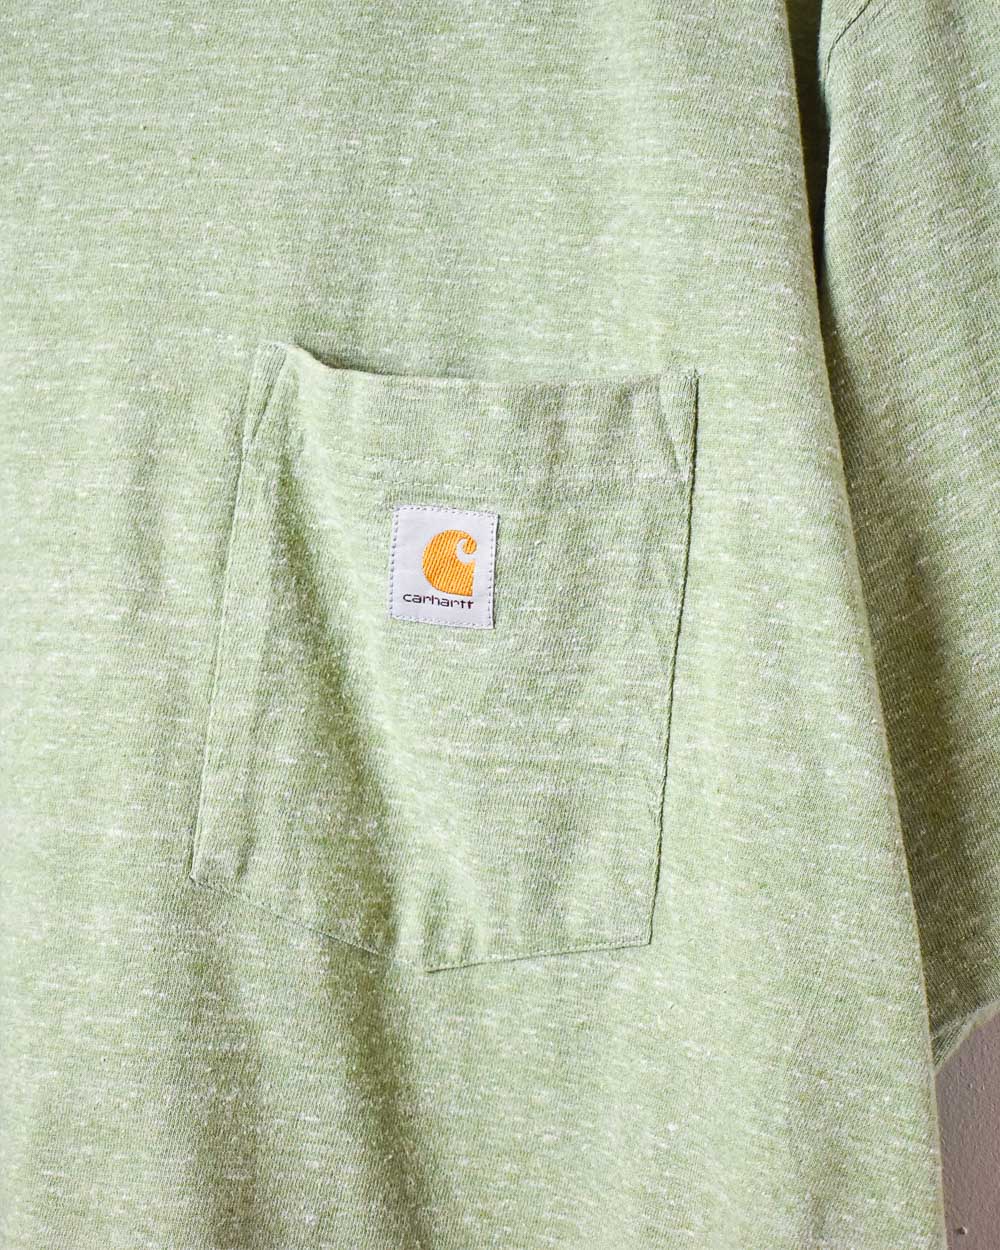 Green Carhartt Pocket T-Shirt - XX-Large